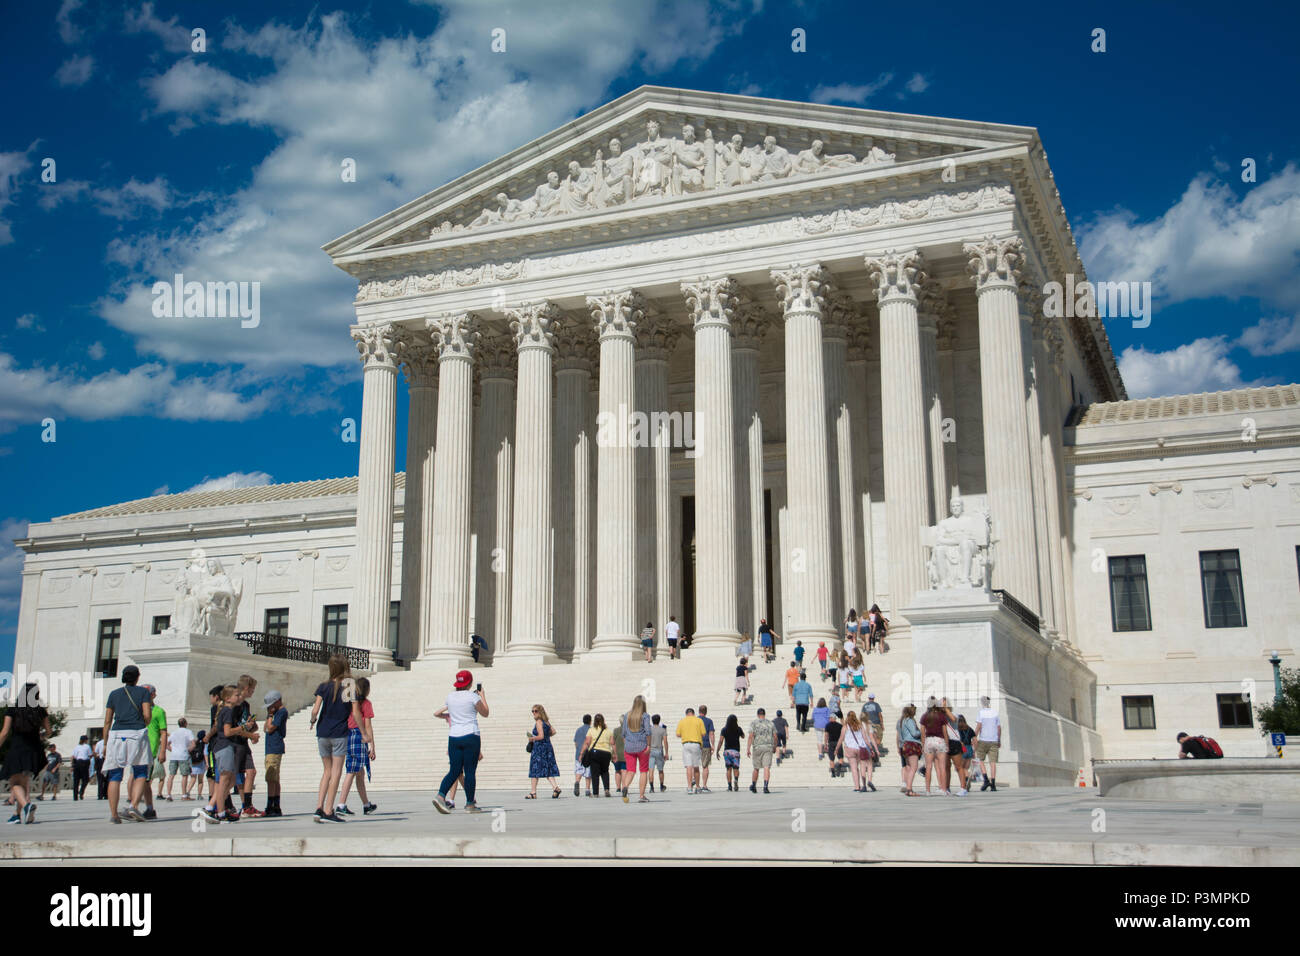 L'Édifice de la Cour suprême est le siège de la Cour suprême de la branche judiciaire de l'United States of America. Achevé en 1935, il est situé dans la région de th Banque D'Images